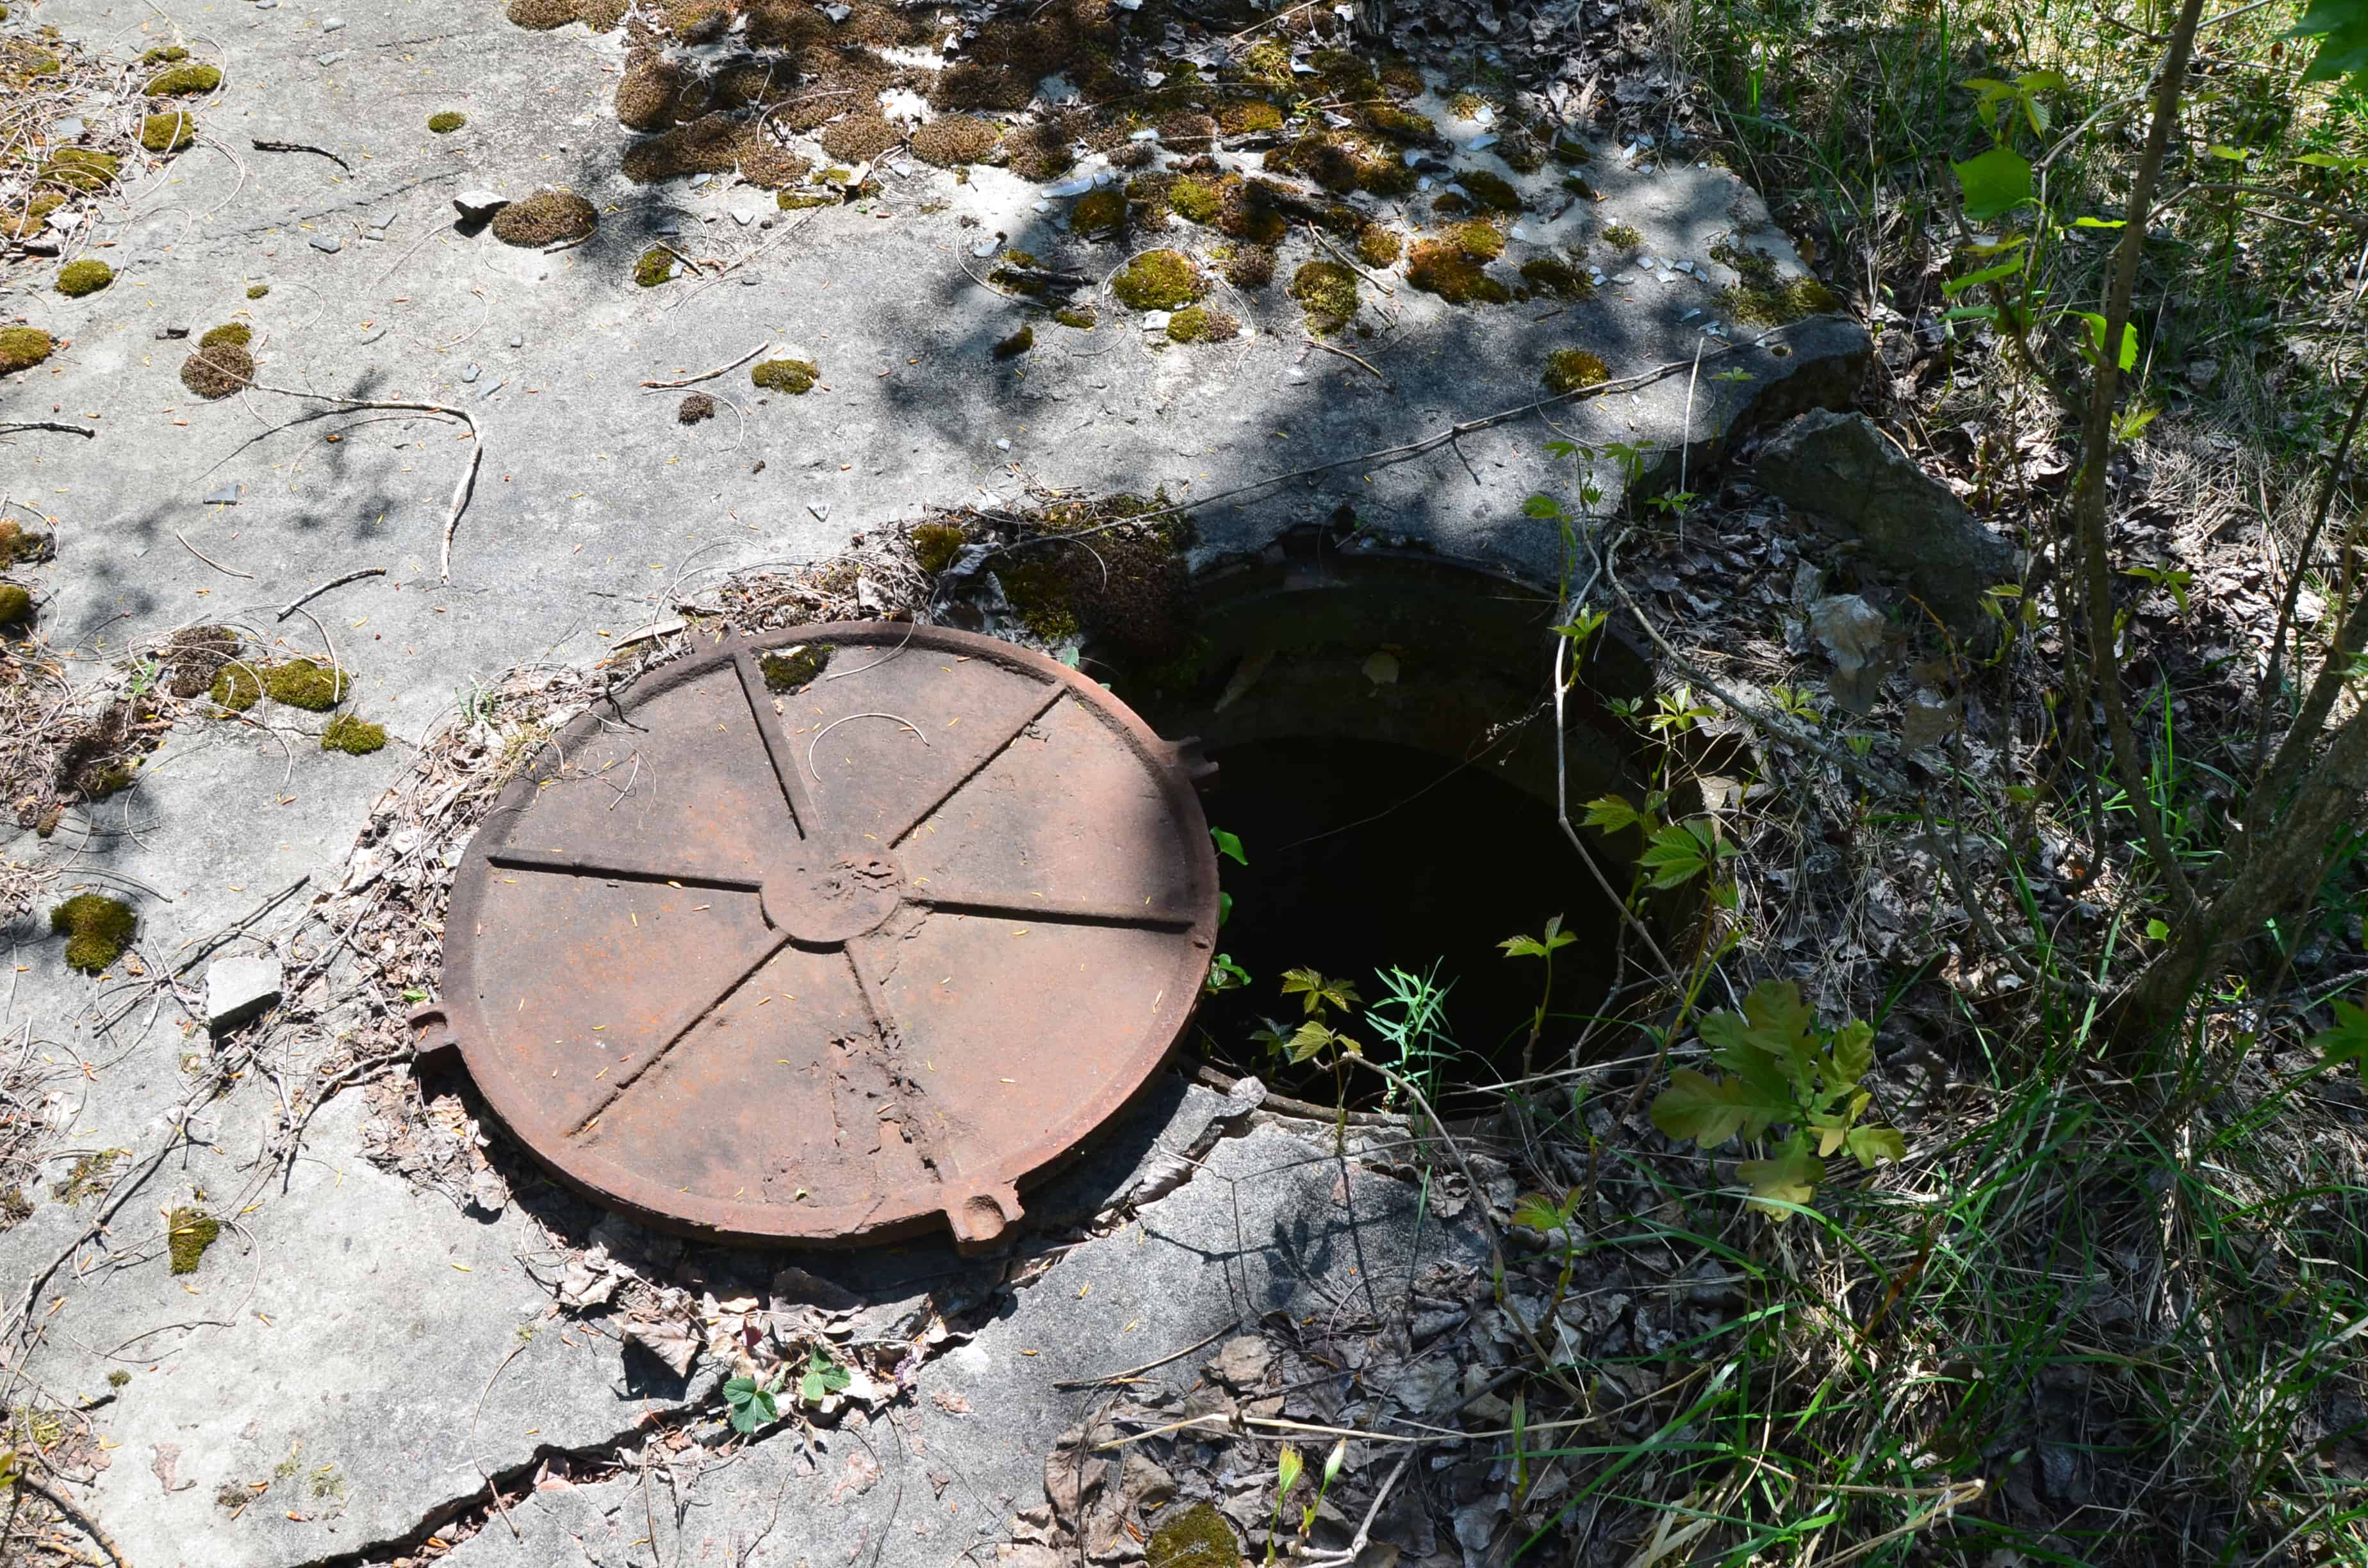 Manhole in Pripyat, Chernobyl Exclusion Zone, Ukraine